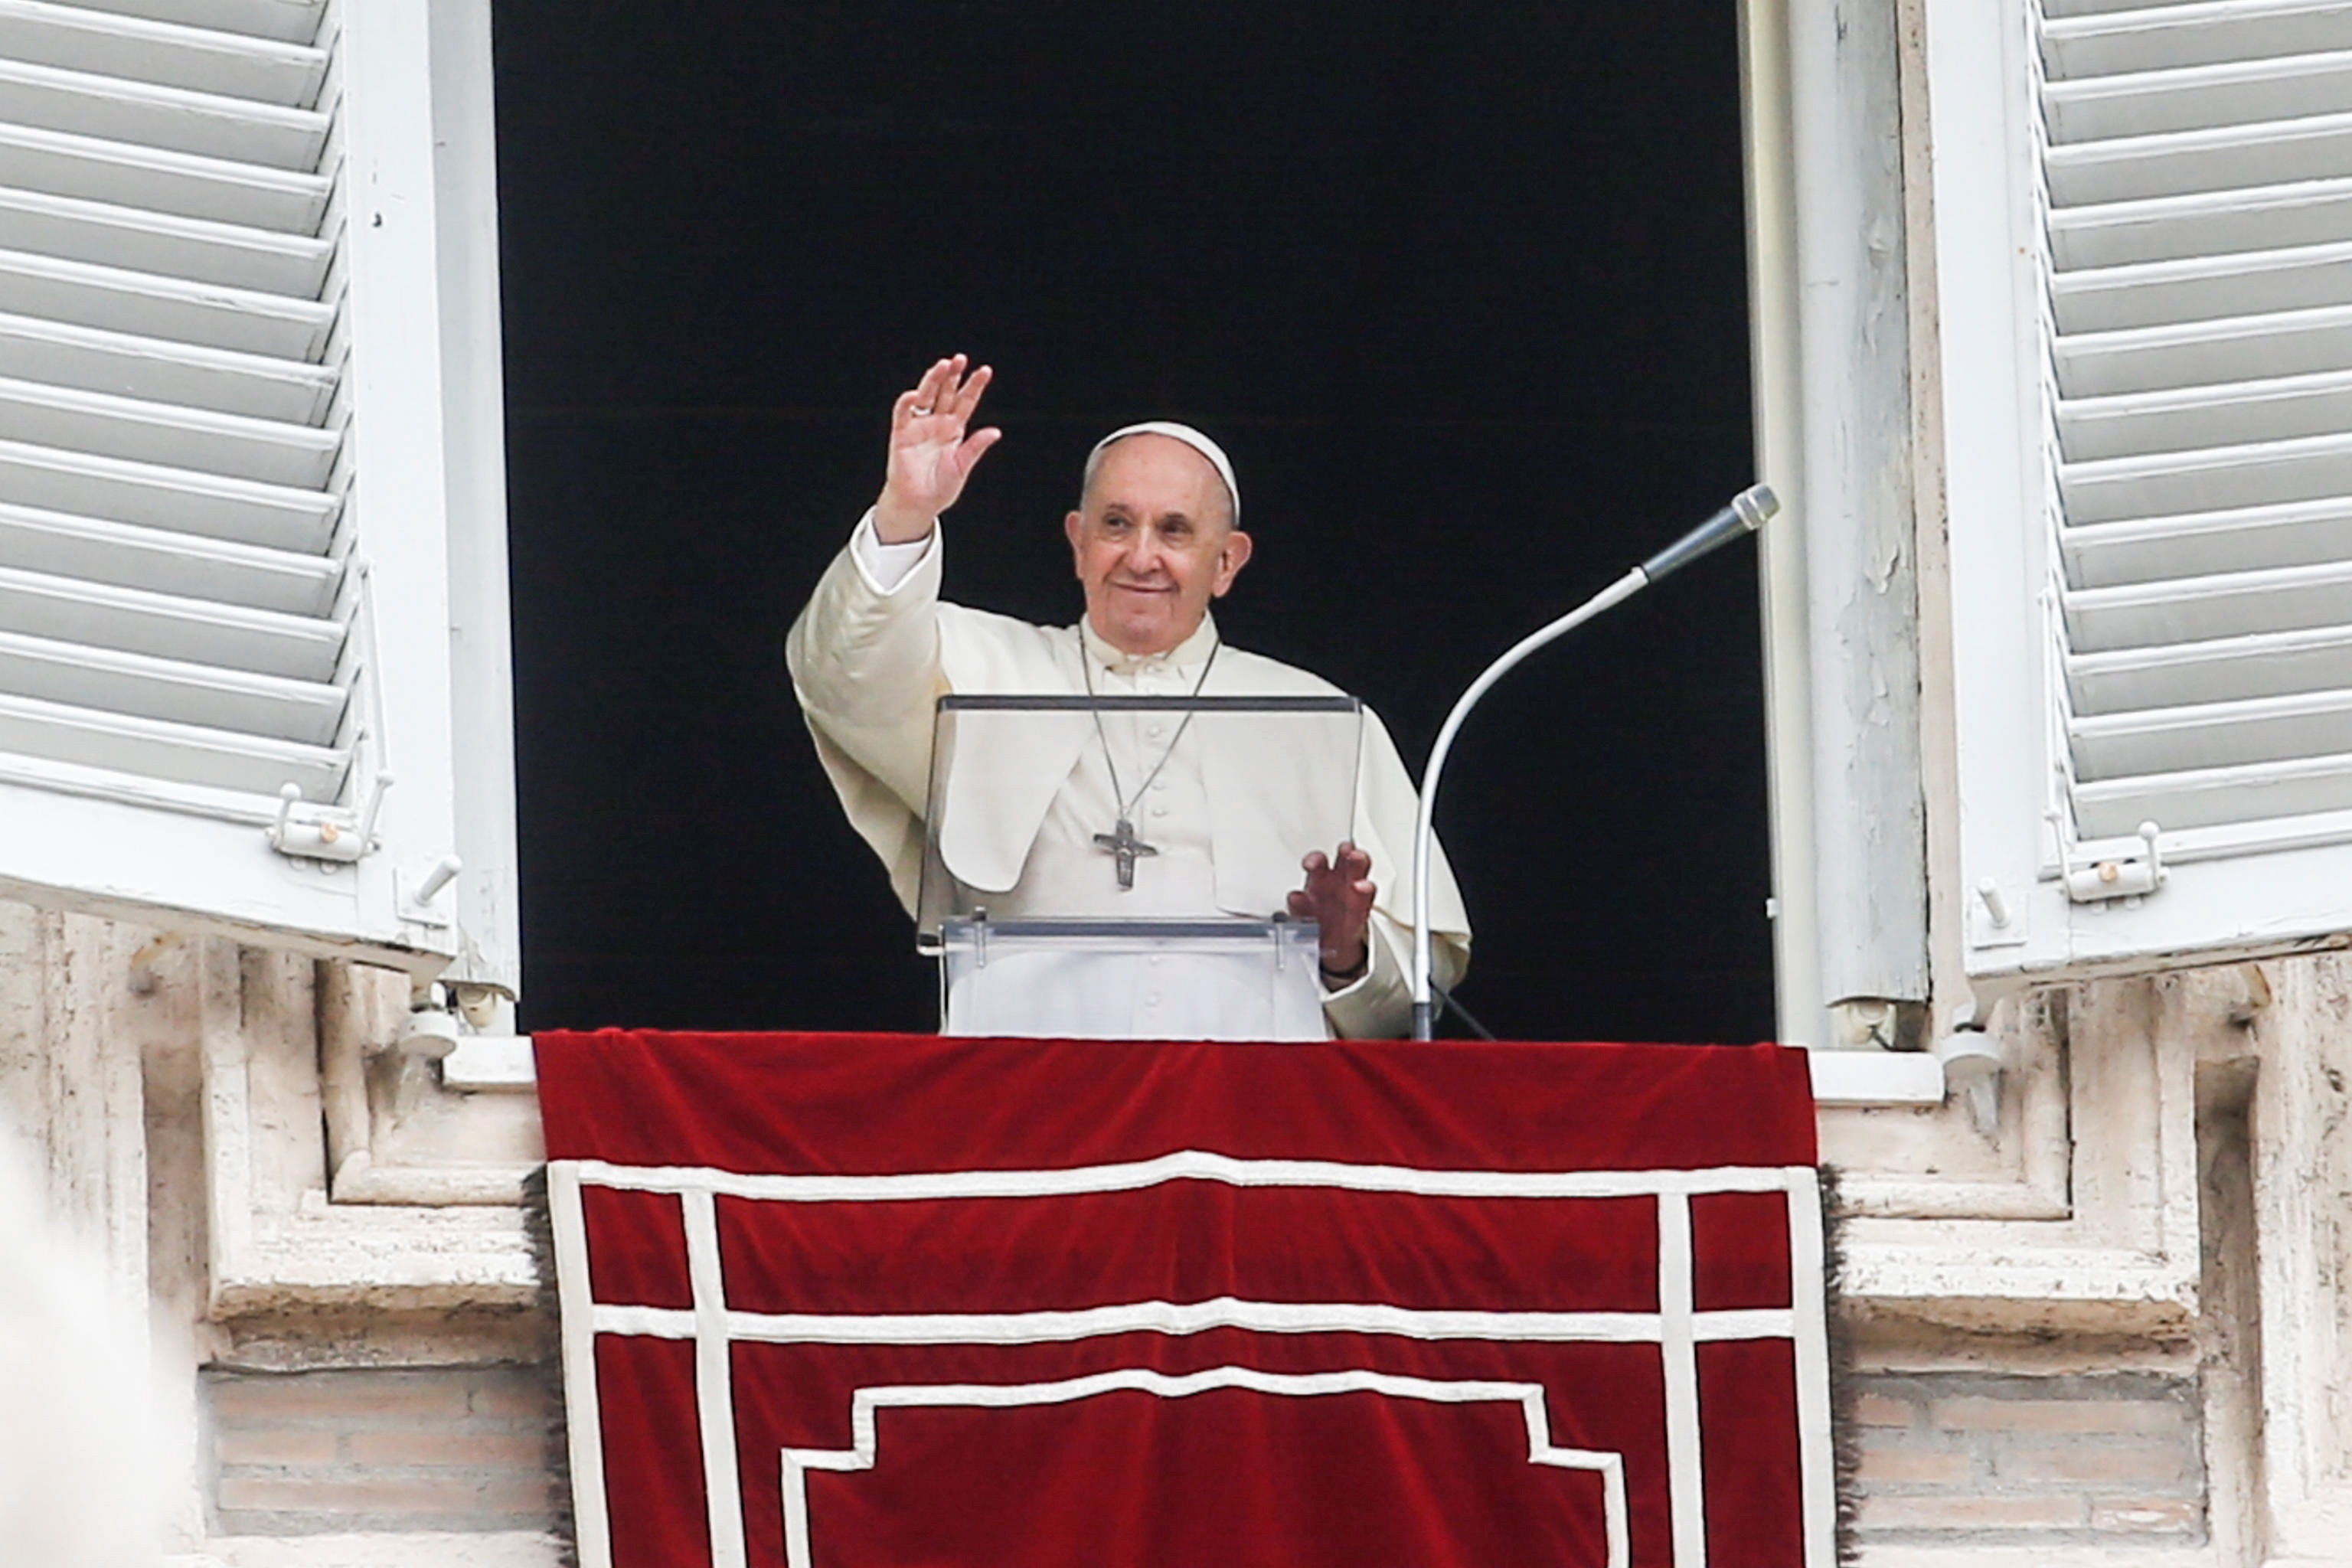 El papa Francisco invitó a los jóvenes a ser “la conciencia crítica de la sociedad”